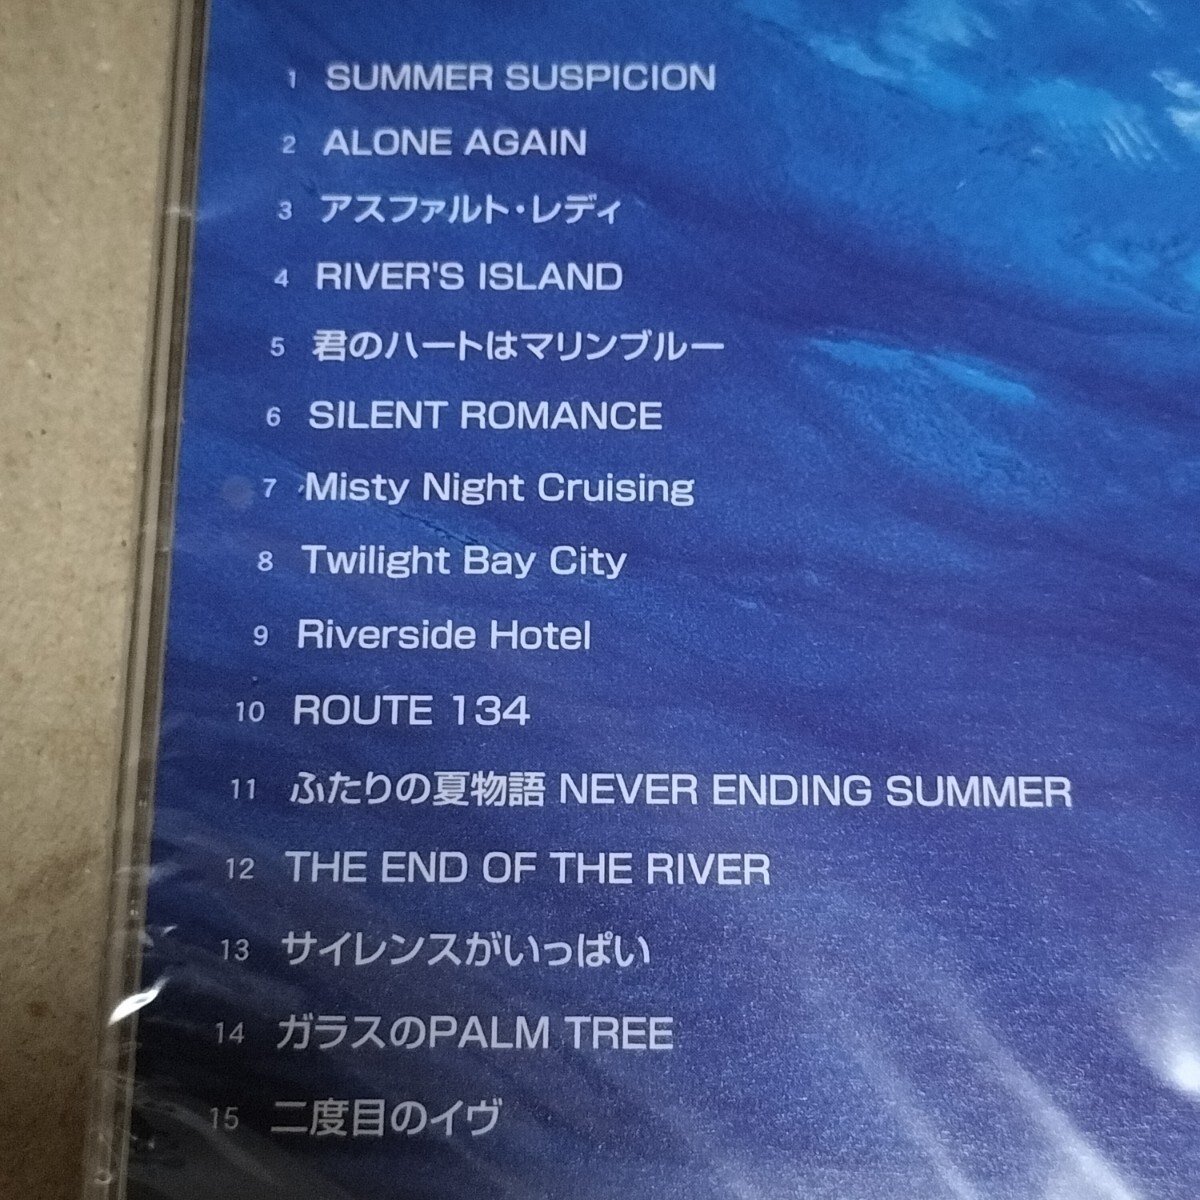  отправка в тот же день новый товар Sugiyama Kiyotaka & Omega Tribe CD золотой лучший наличие иметь 02